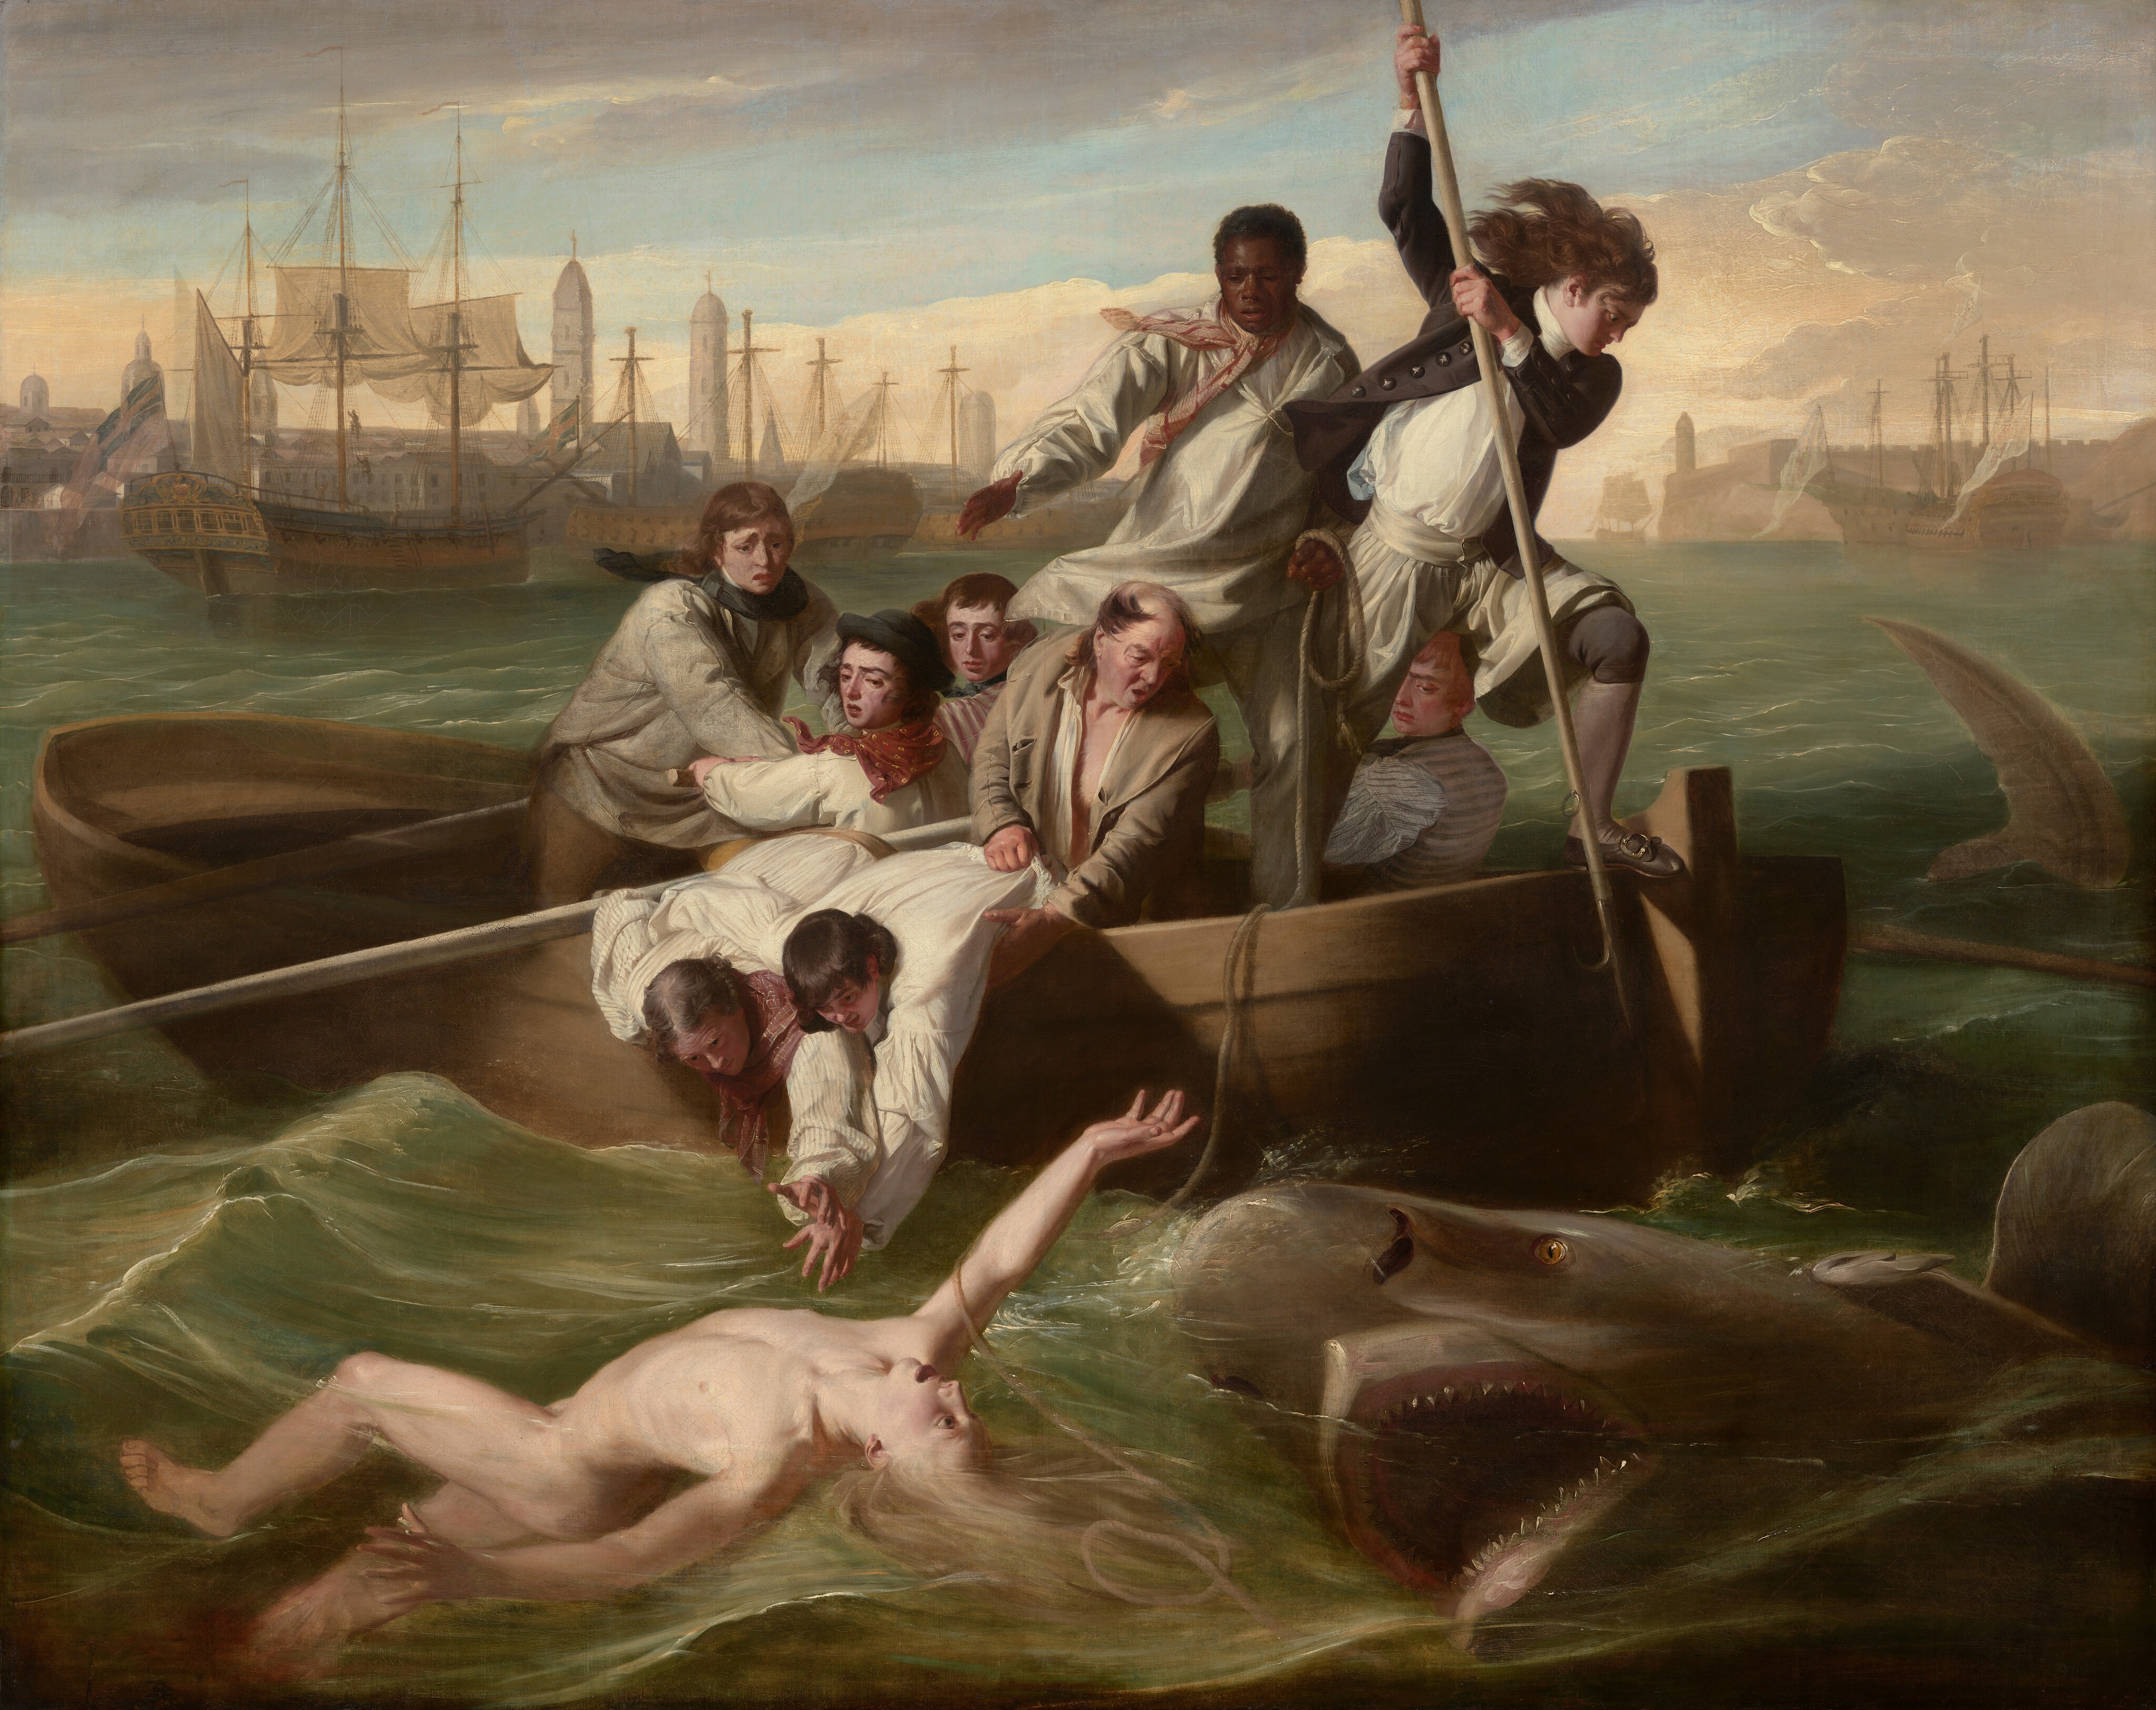 Реализм 18 век. Джон Синглтон Копли Уотсон и акула. Джон Синглтон Копли картины. Брук Уотсон и акула.